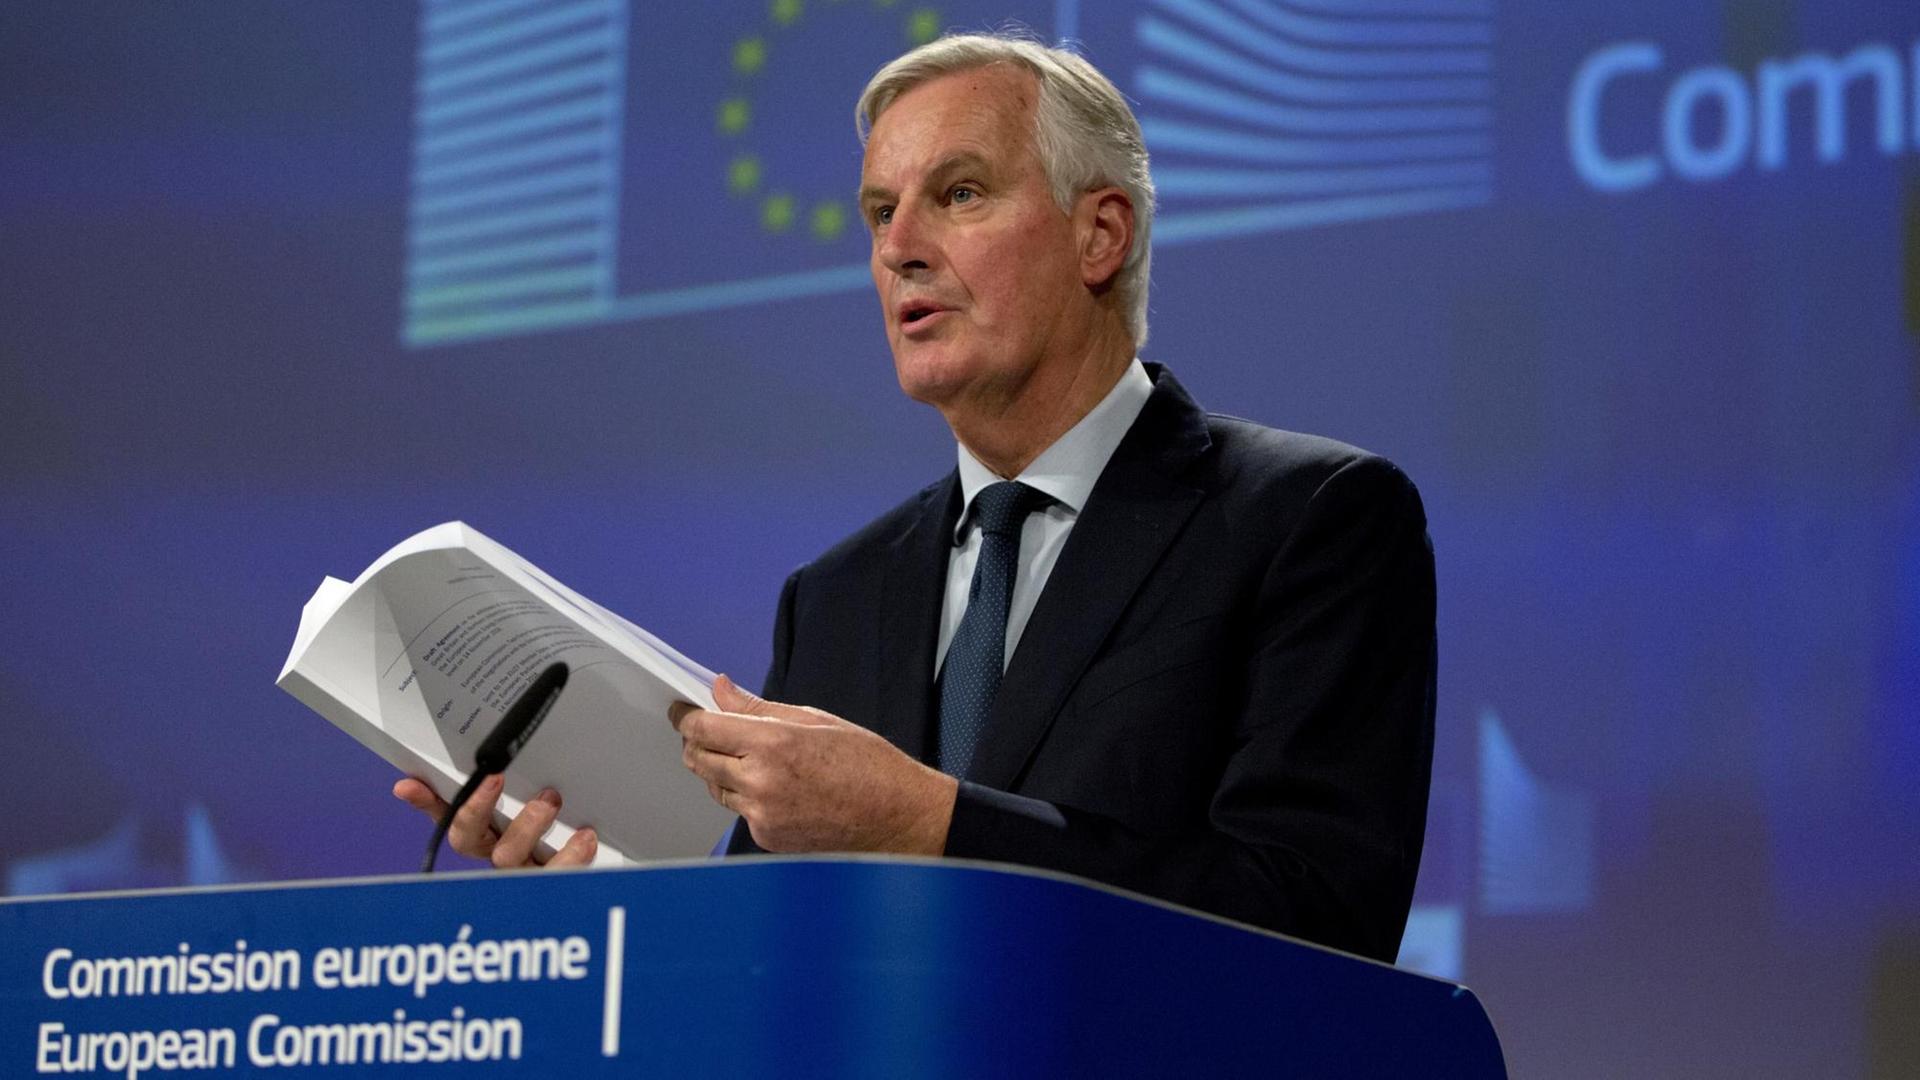 Barnier steht vor einer blauen Wand mit der Aufschrift "European Commission" an einem Pult hinter einem Mikrofon und blättert mit Blick nach vorne in dem Dokument.